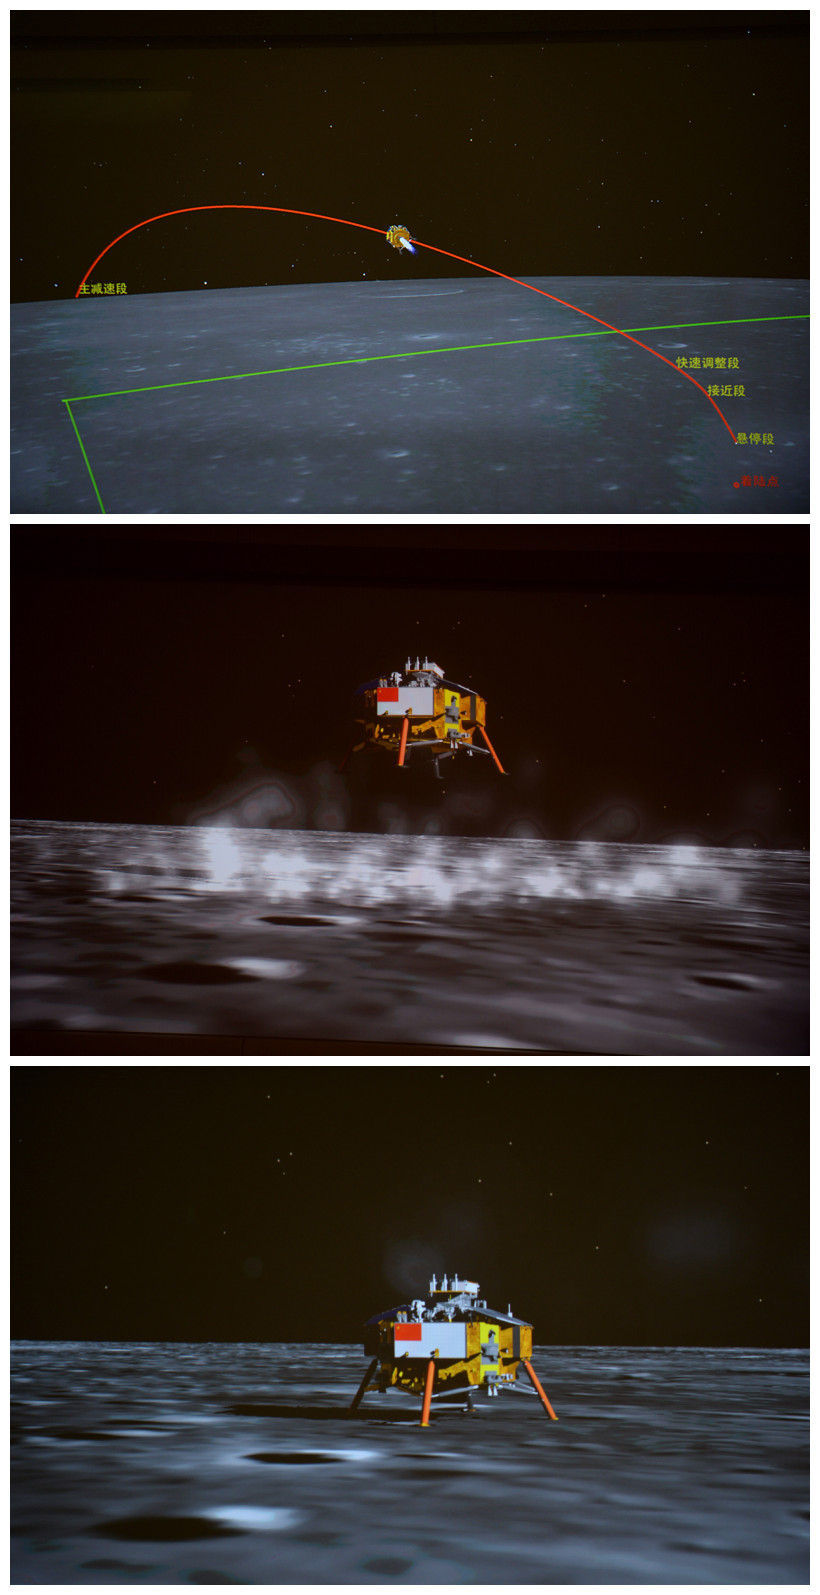 2013年12月14日，嫦娥三号平稳落月，中国首次地外天体软着陆成功。这是北京飞控中心大屏幕上显示的嫦娥三号探测器落月过程。新华社记者 李鑫 摄